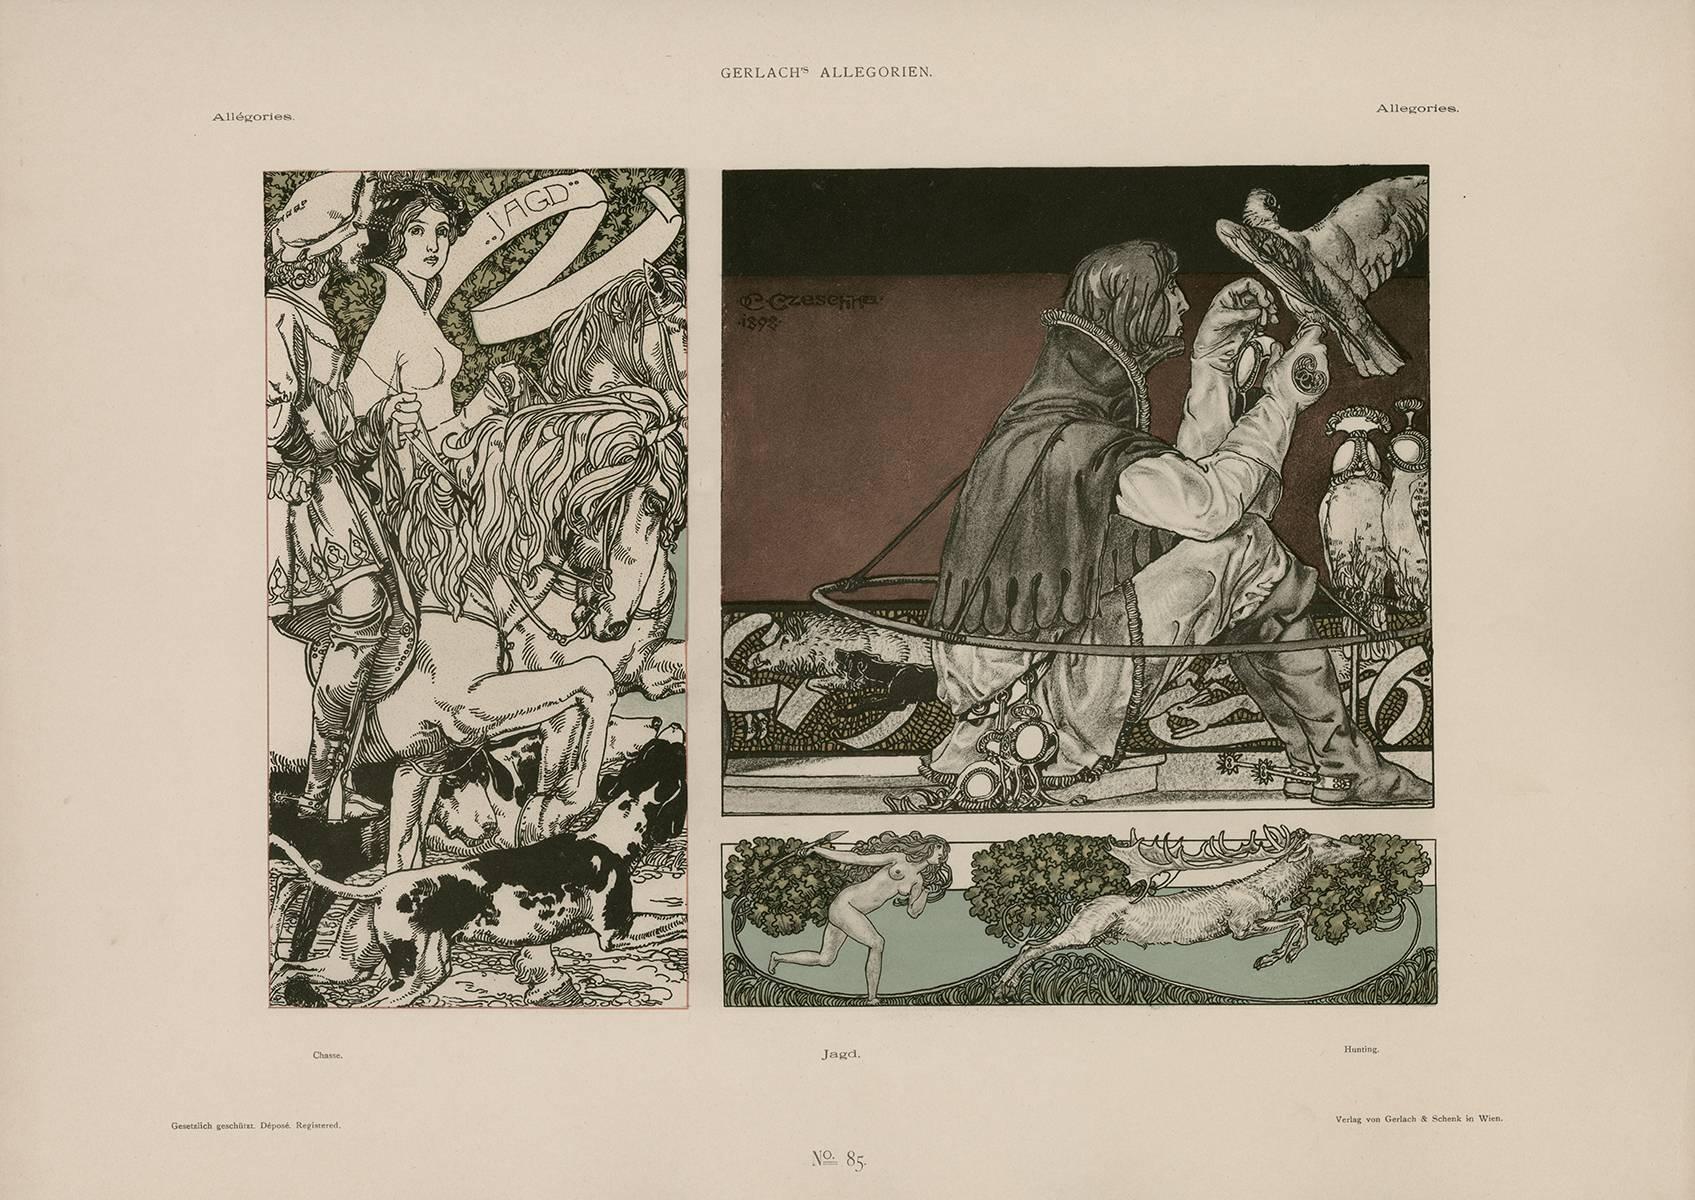 Gerlach's Allegorien Plate #85: "Hunting" Lithograph by Carl Otto Czeschka